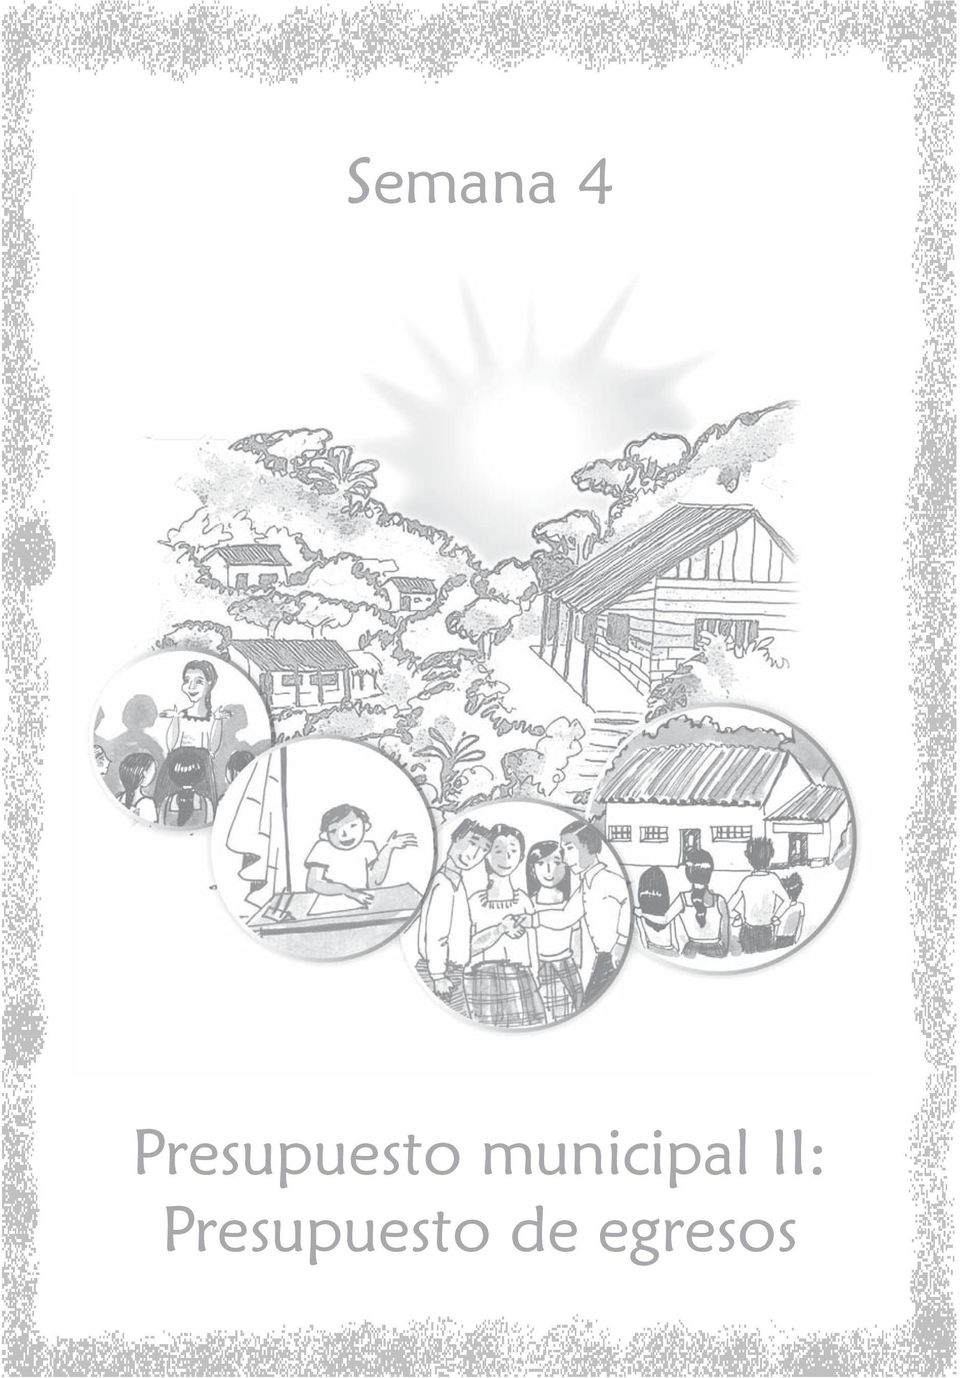 municipal II: 